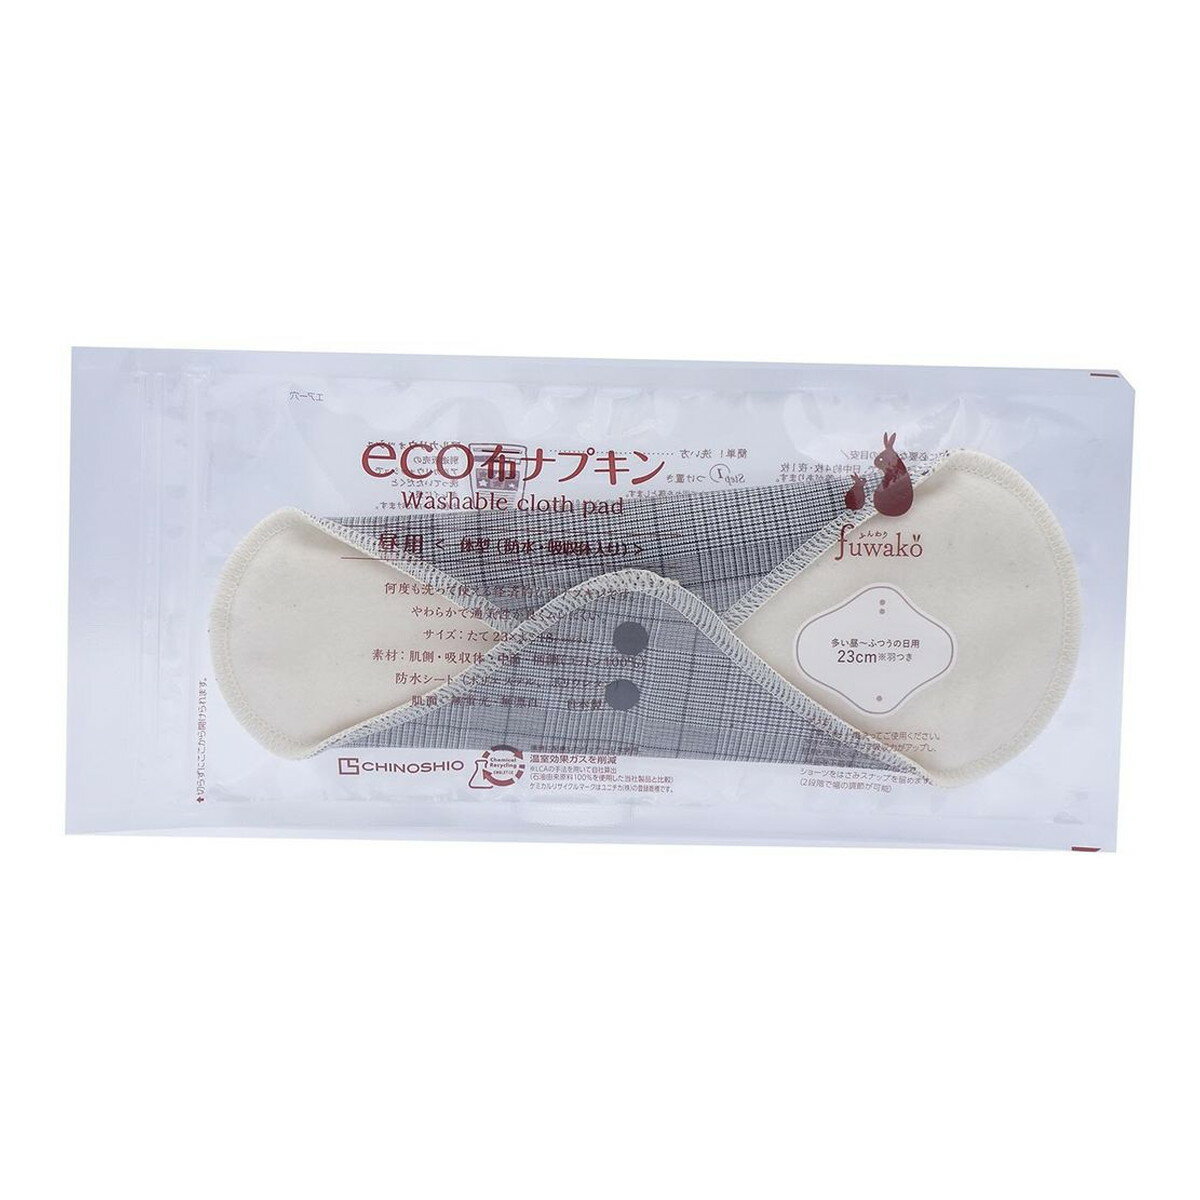 【配送おまかせ】地の塩社 fuwako eco 布ナプキン 昼用 タータンチェック黒 1個